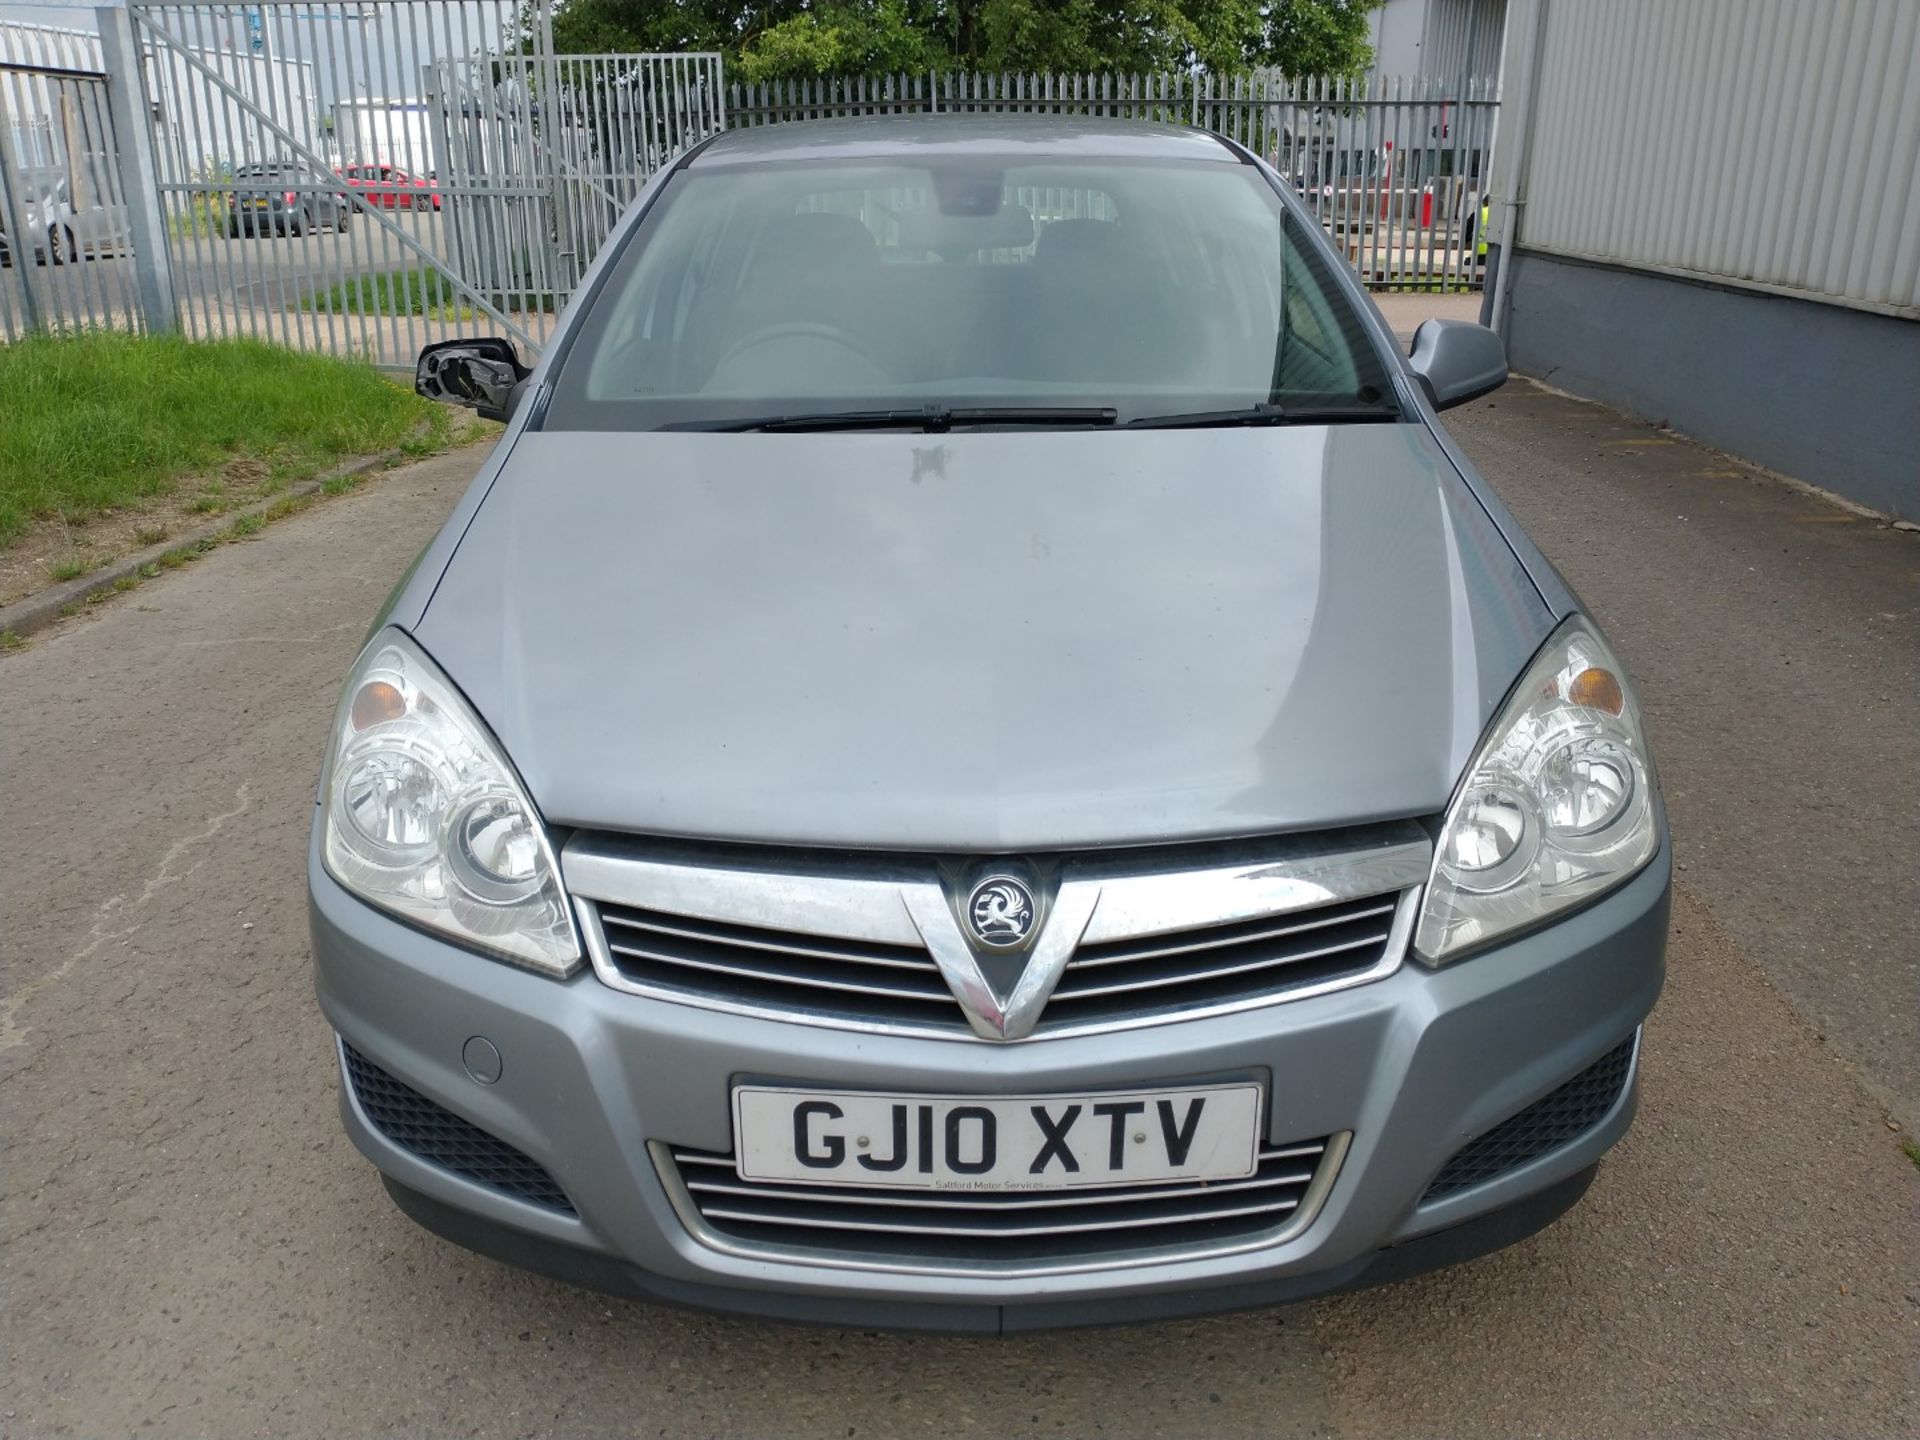 2010 Vauxhall Astra Active 5dr Hatchback 1.4 Petrol - CL505 - Ref: VVS0014 - NO VAT ON THE HAMMER - - Image 11 of 18